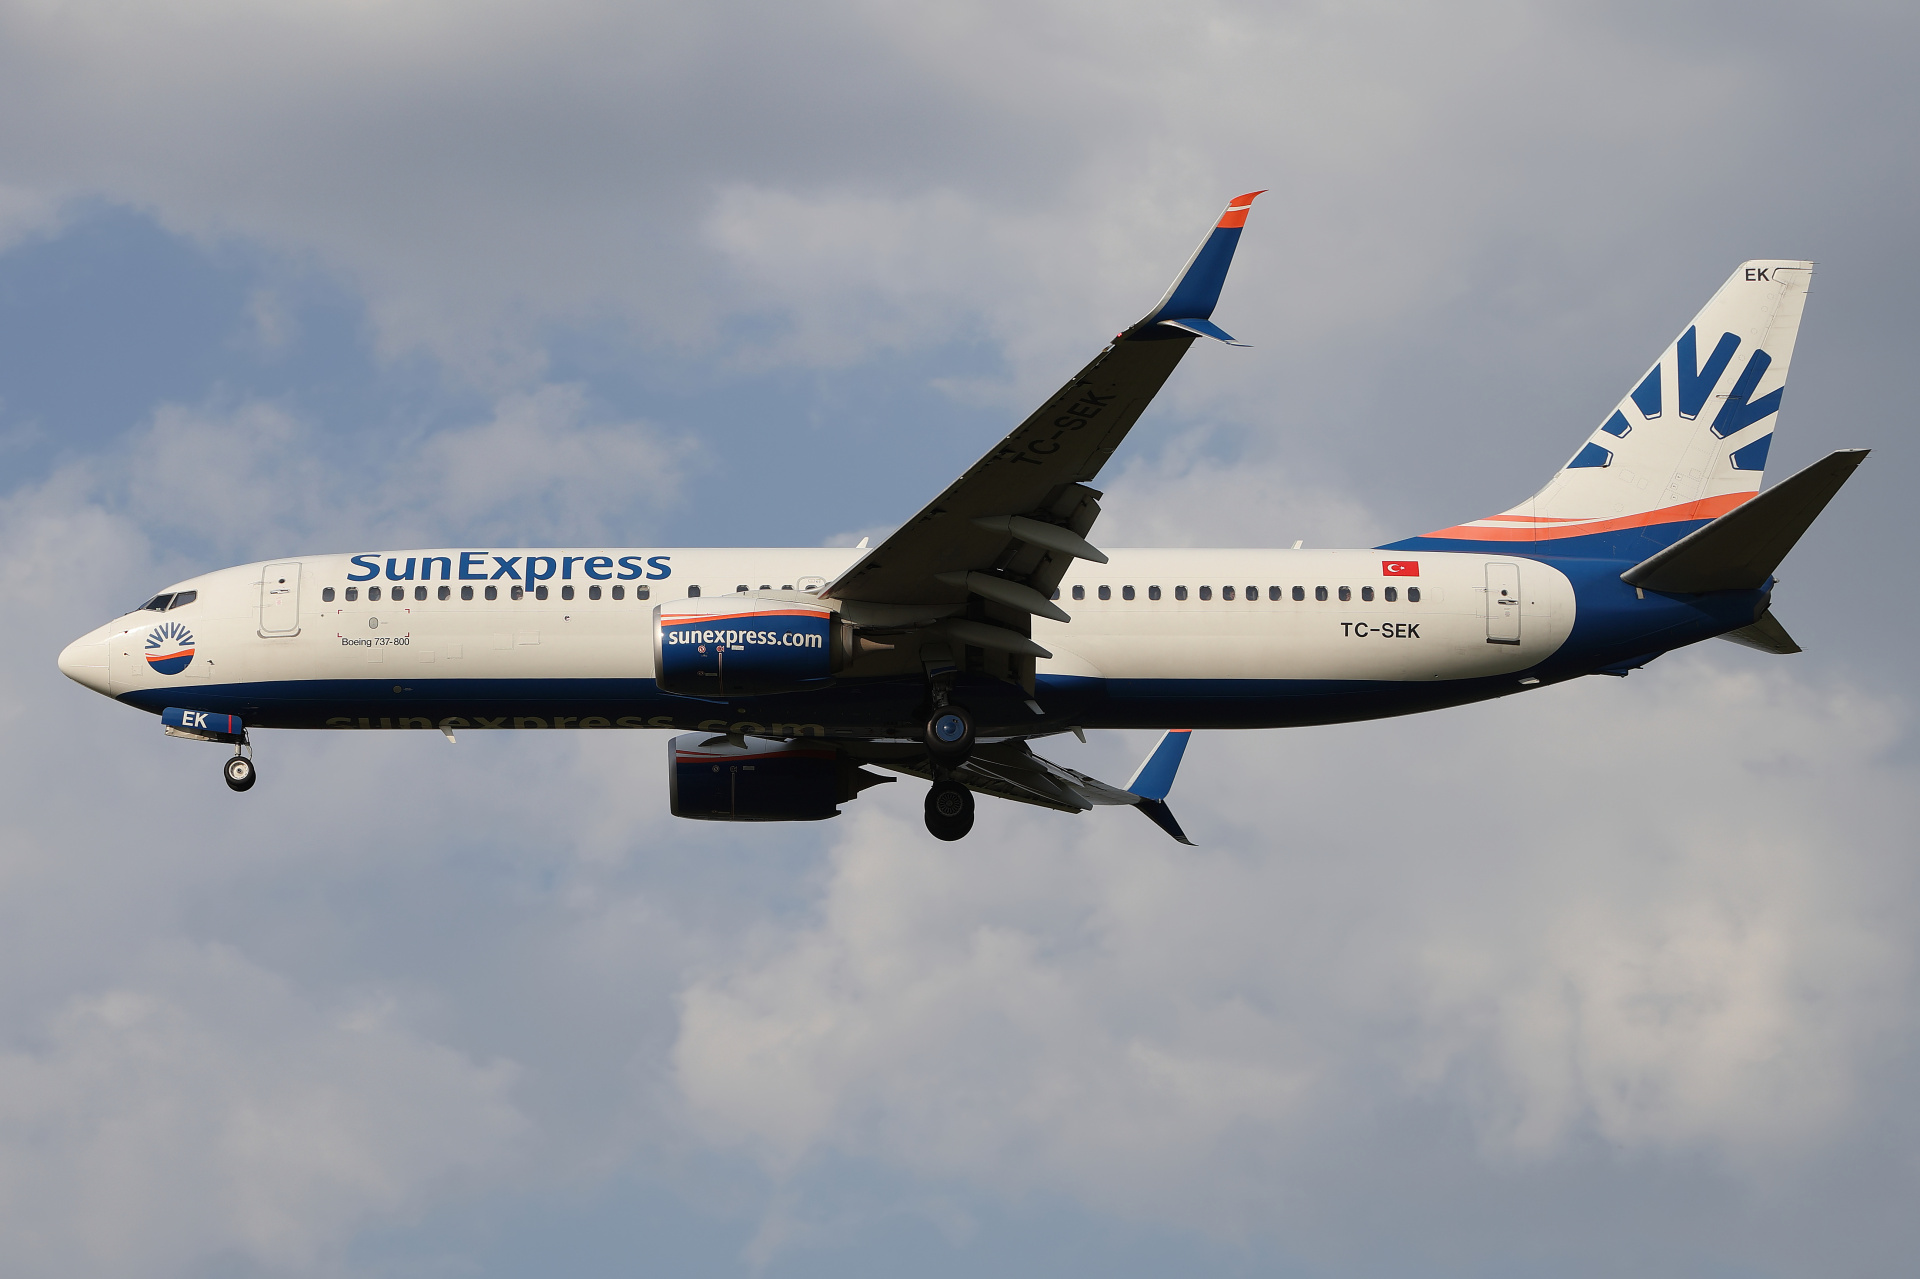 TC-SEK (Aircraft » EPWA Spotting » Boeing 737-800 » SunExpress)